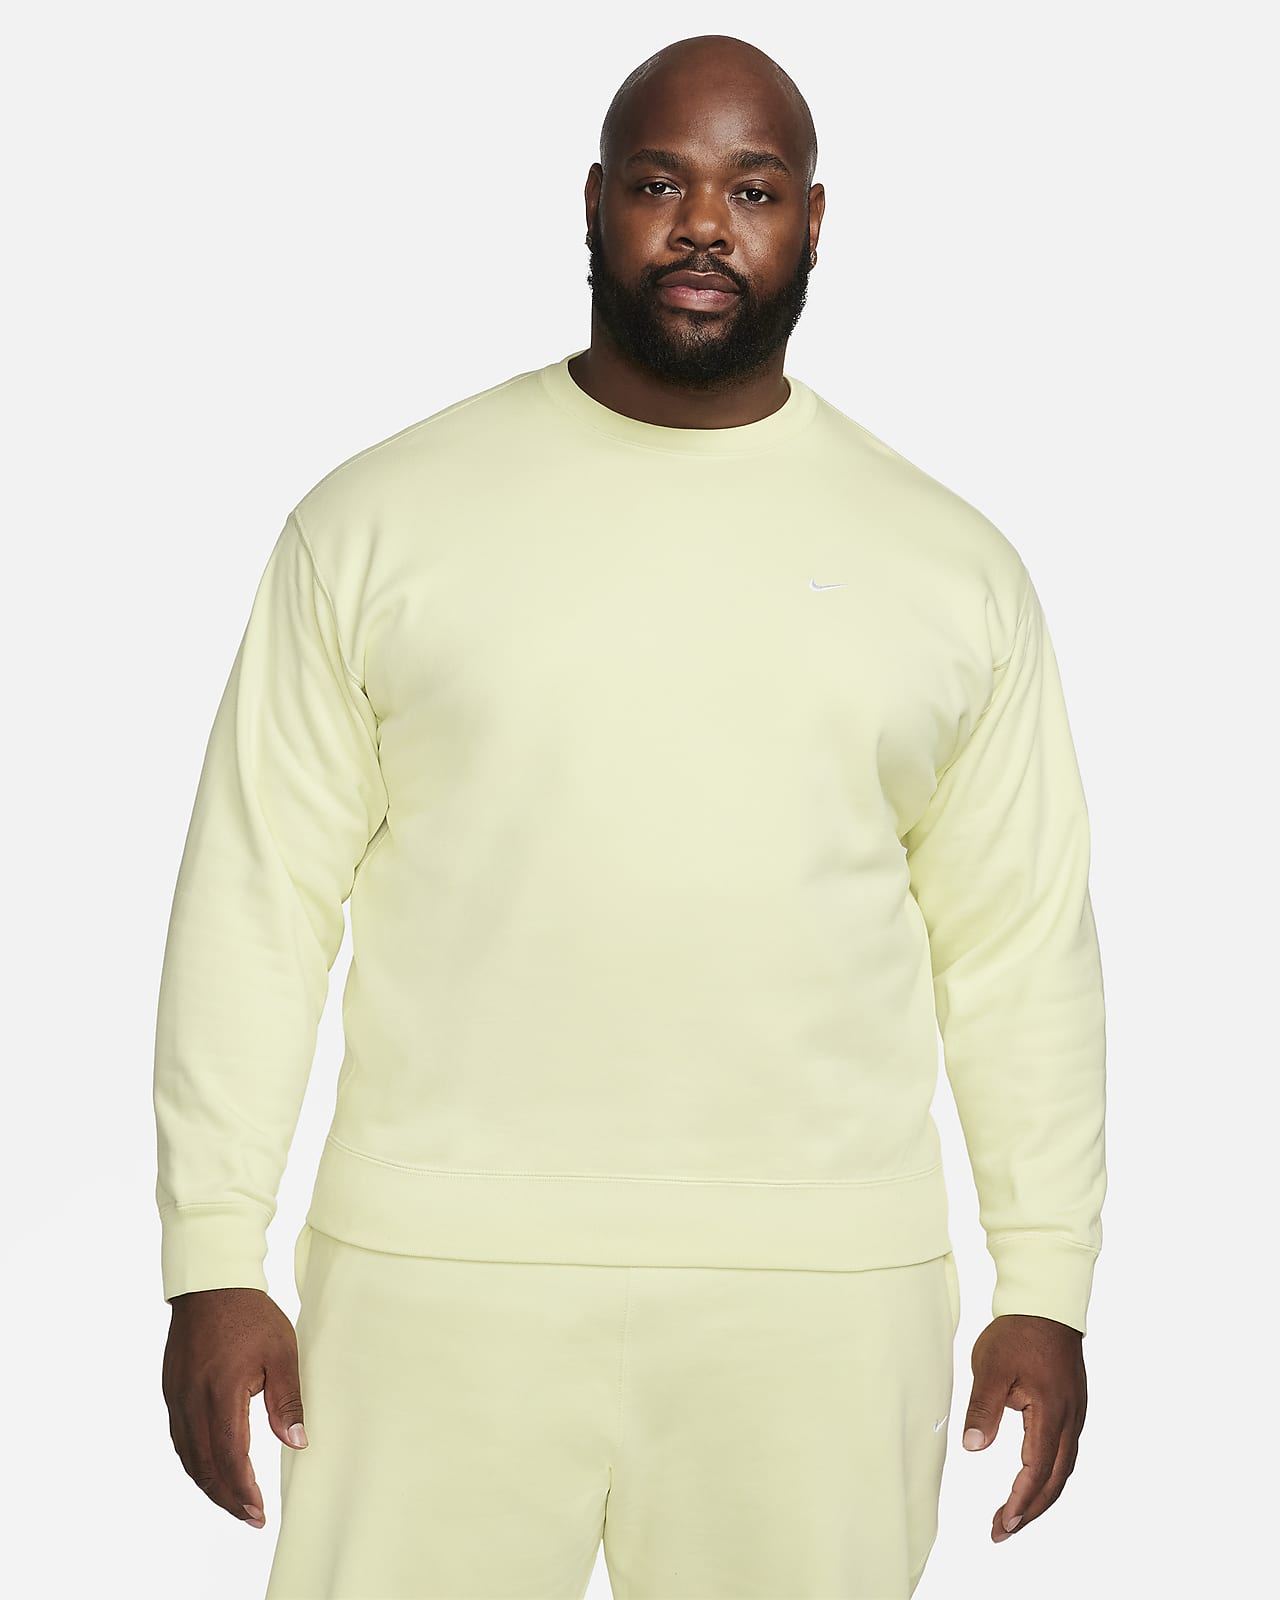 Nike Solo Swoosh Men's T-Shirt